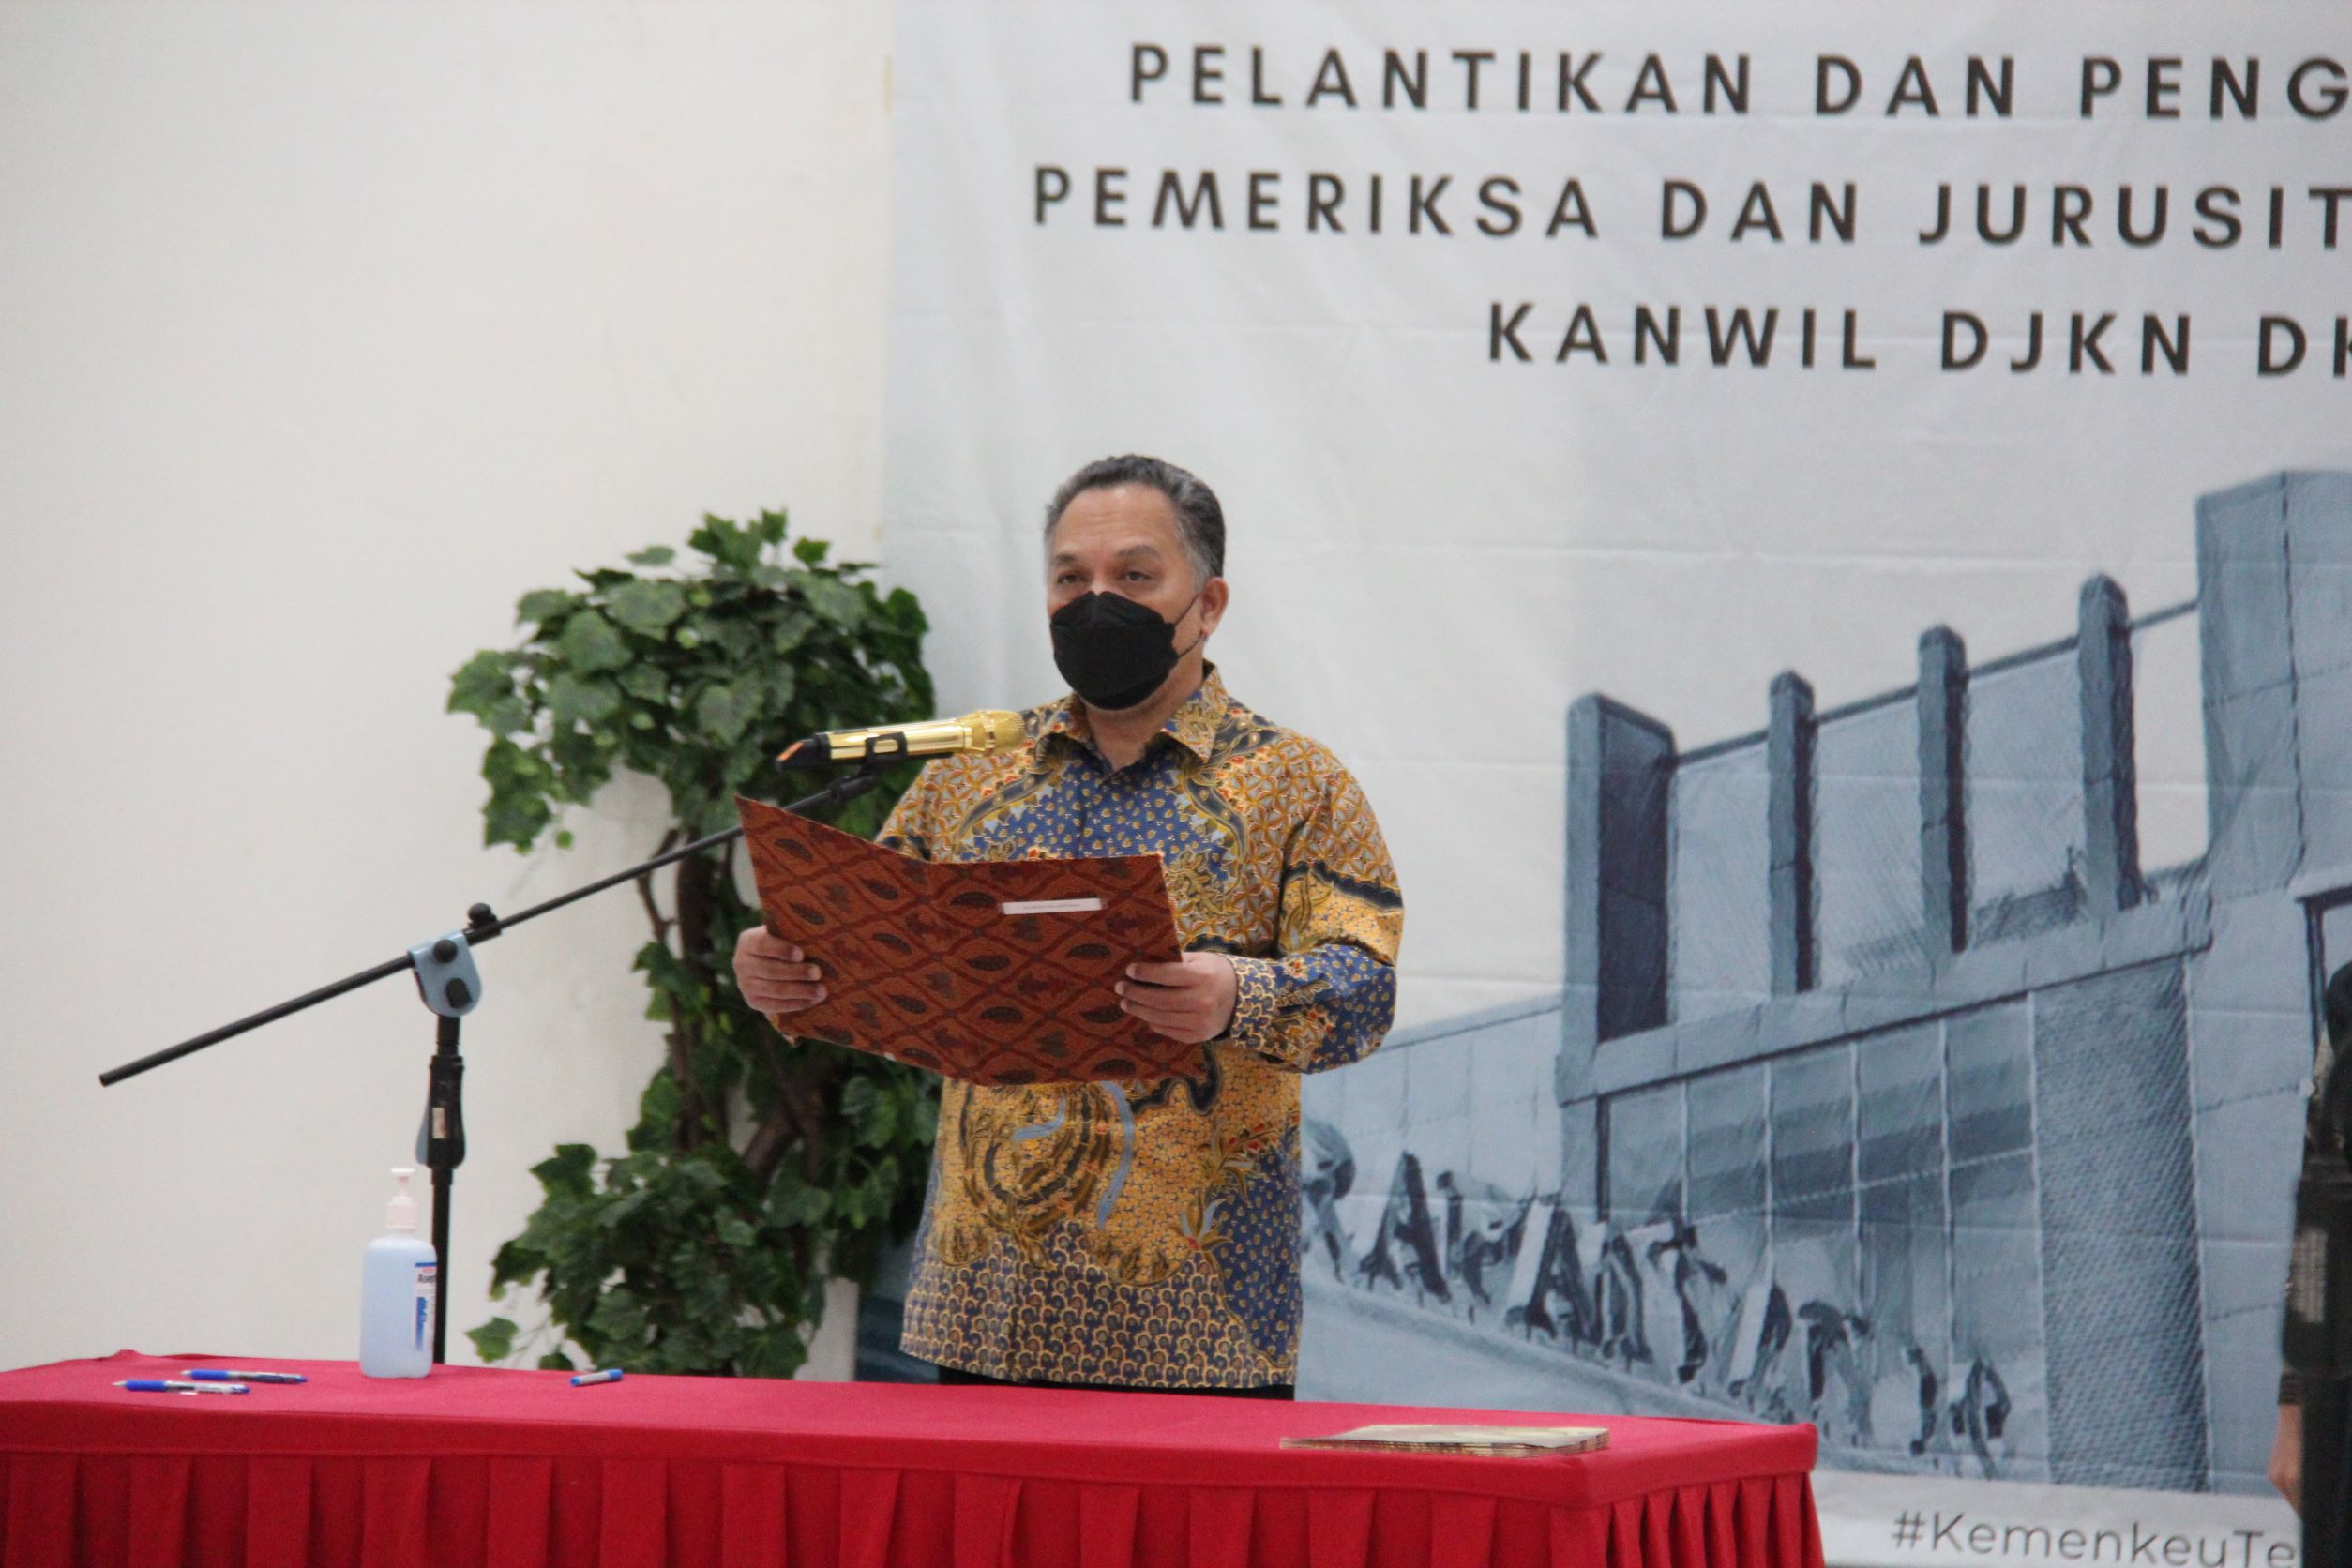 Pelantikan/Pengambilan Sumpah Pemeriksa dan Juru Sita Piutang Negara di lingkungan Kanwil DJKN DKI Jakarta